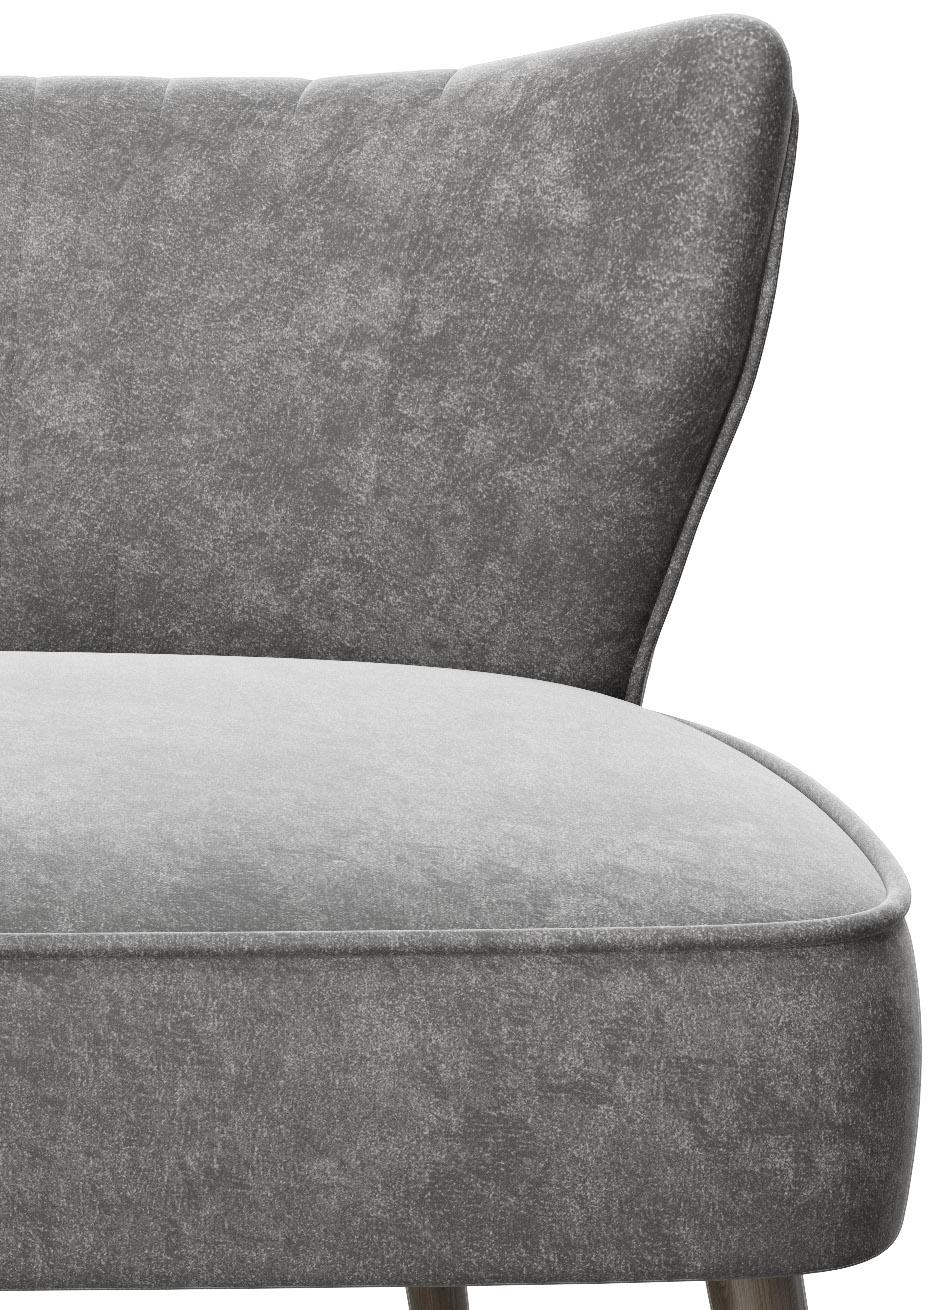 2-Sitzer-Sofa Kelly Anthrazit Vintage-Design online kaufen ➤ mömax